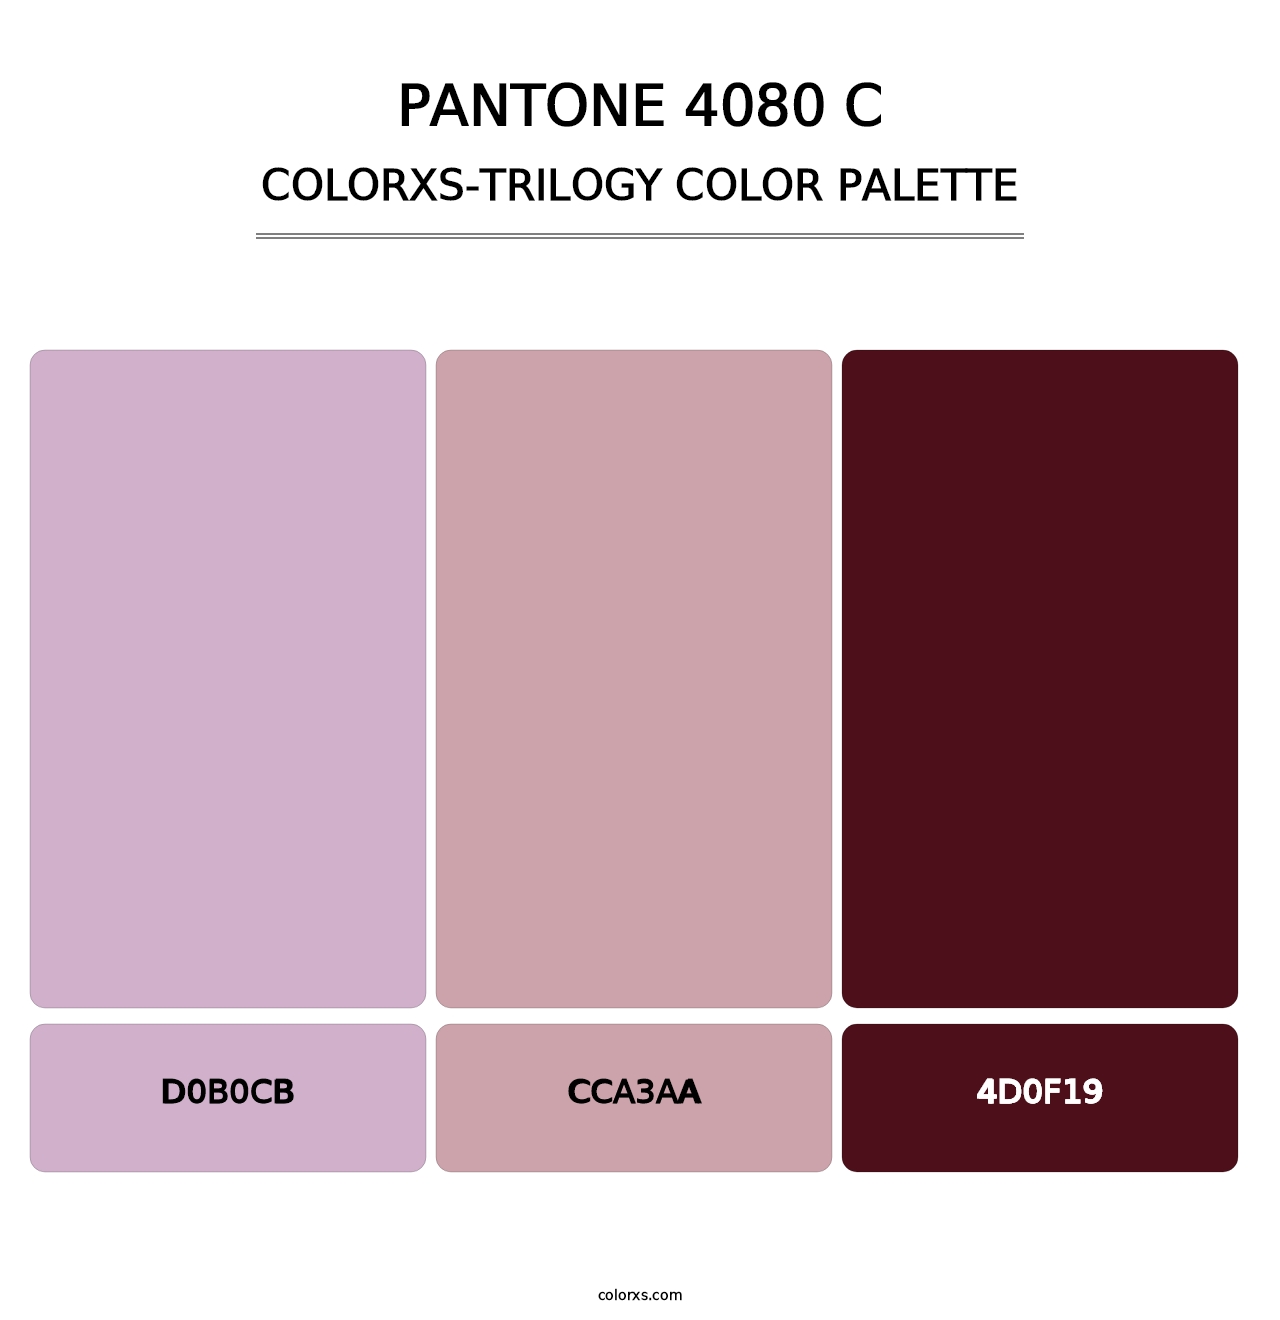 PANTONE 4080 C - Colorxs Trilogy Palette